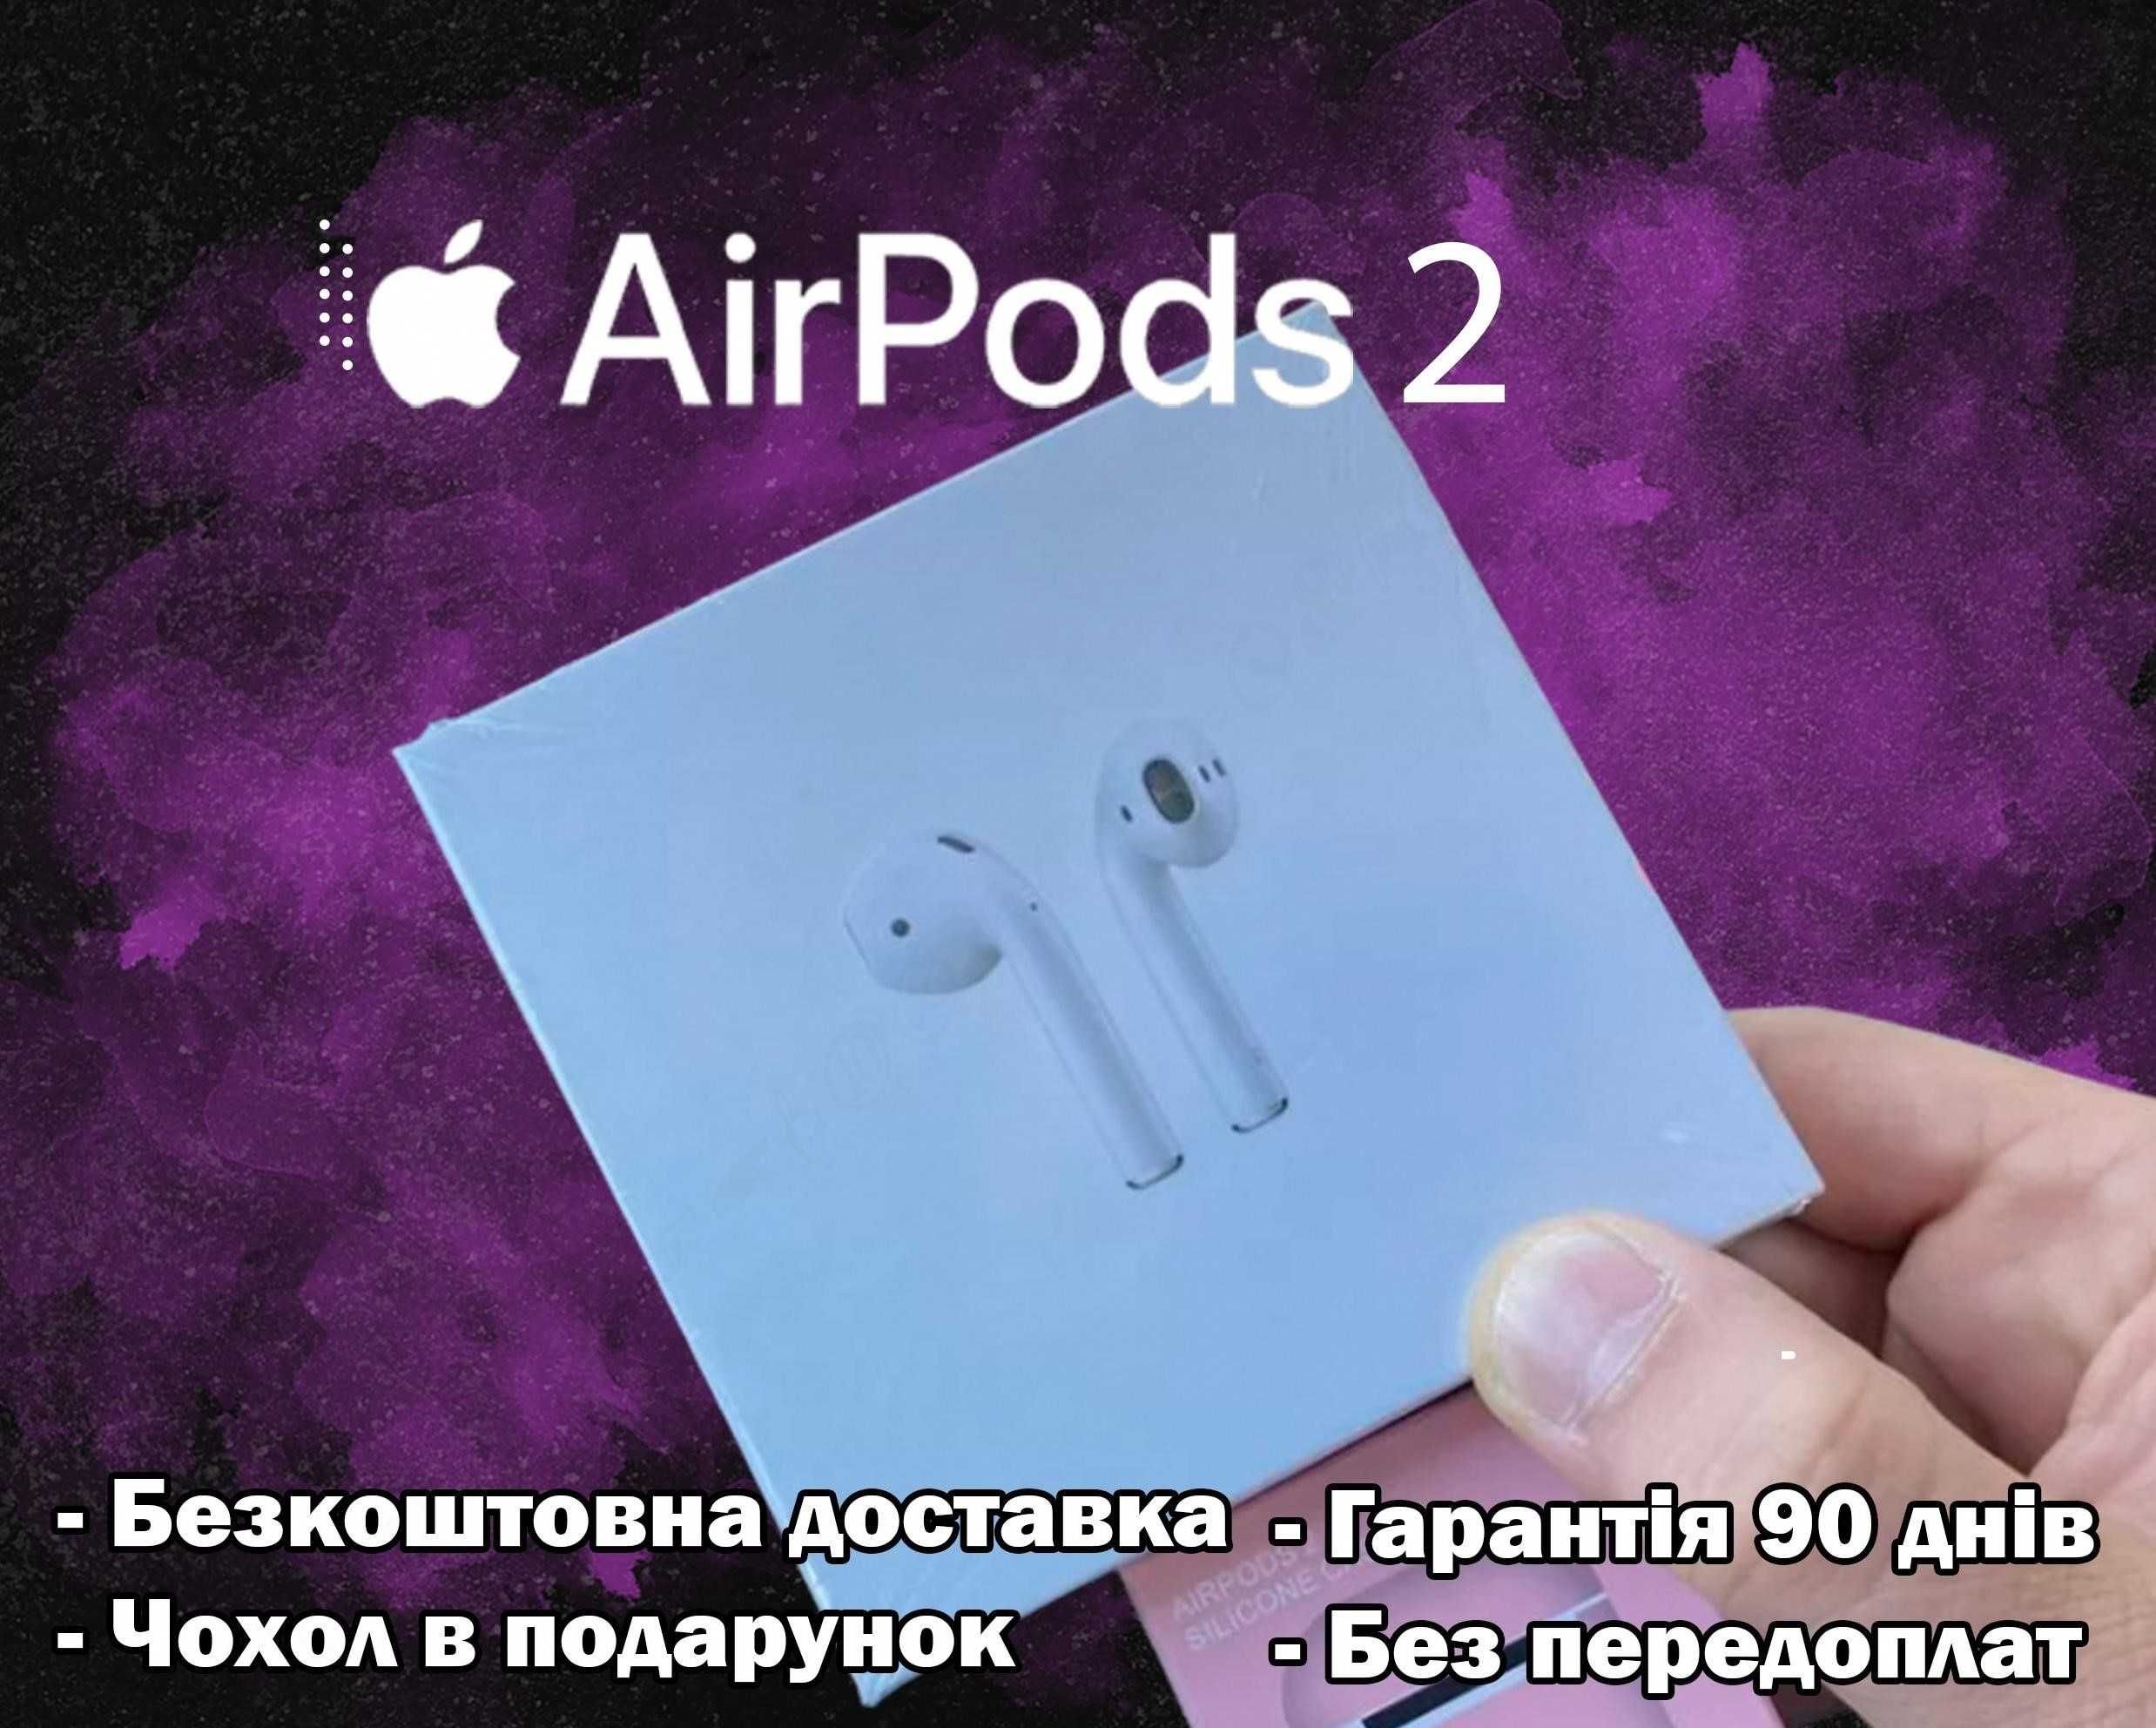 Бездротові навушники AirPods 2 Premium якості + чехол у подарунок